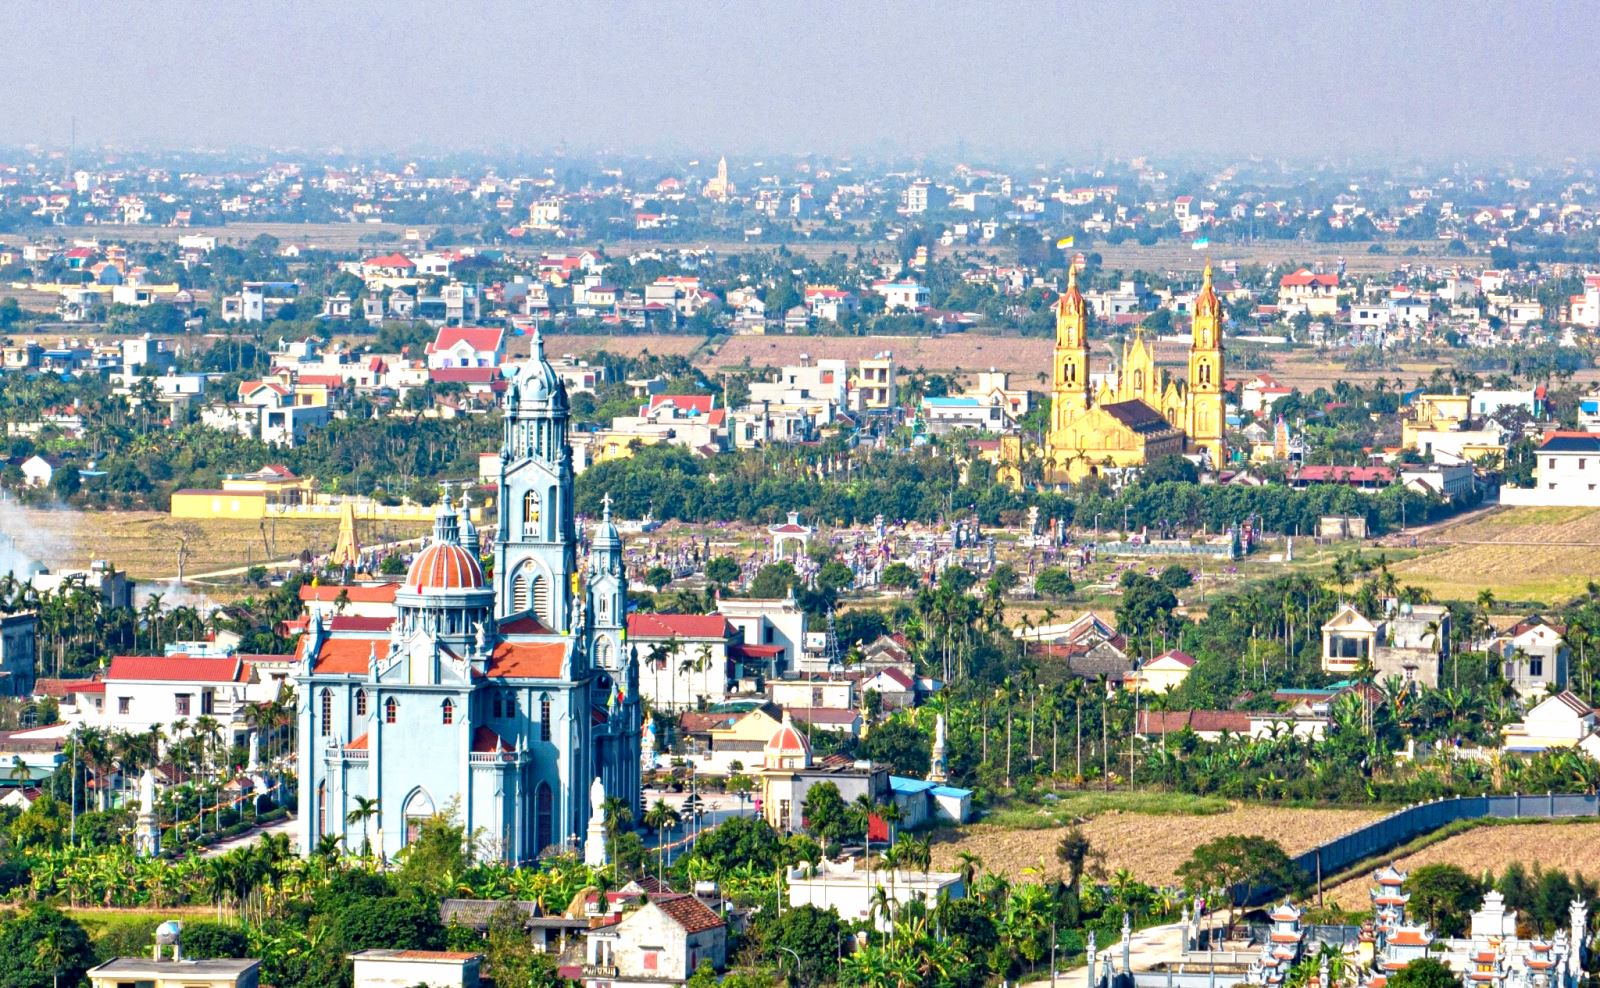 Giáo phận Bùi Chu có nhiều xứ đạo lâu đời và gắn liền với nhiều sự kiện quan trọng liên quan đến lịch sử hình thành và phát triển của Công giáo tại Việt Nam. 